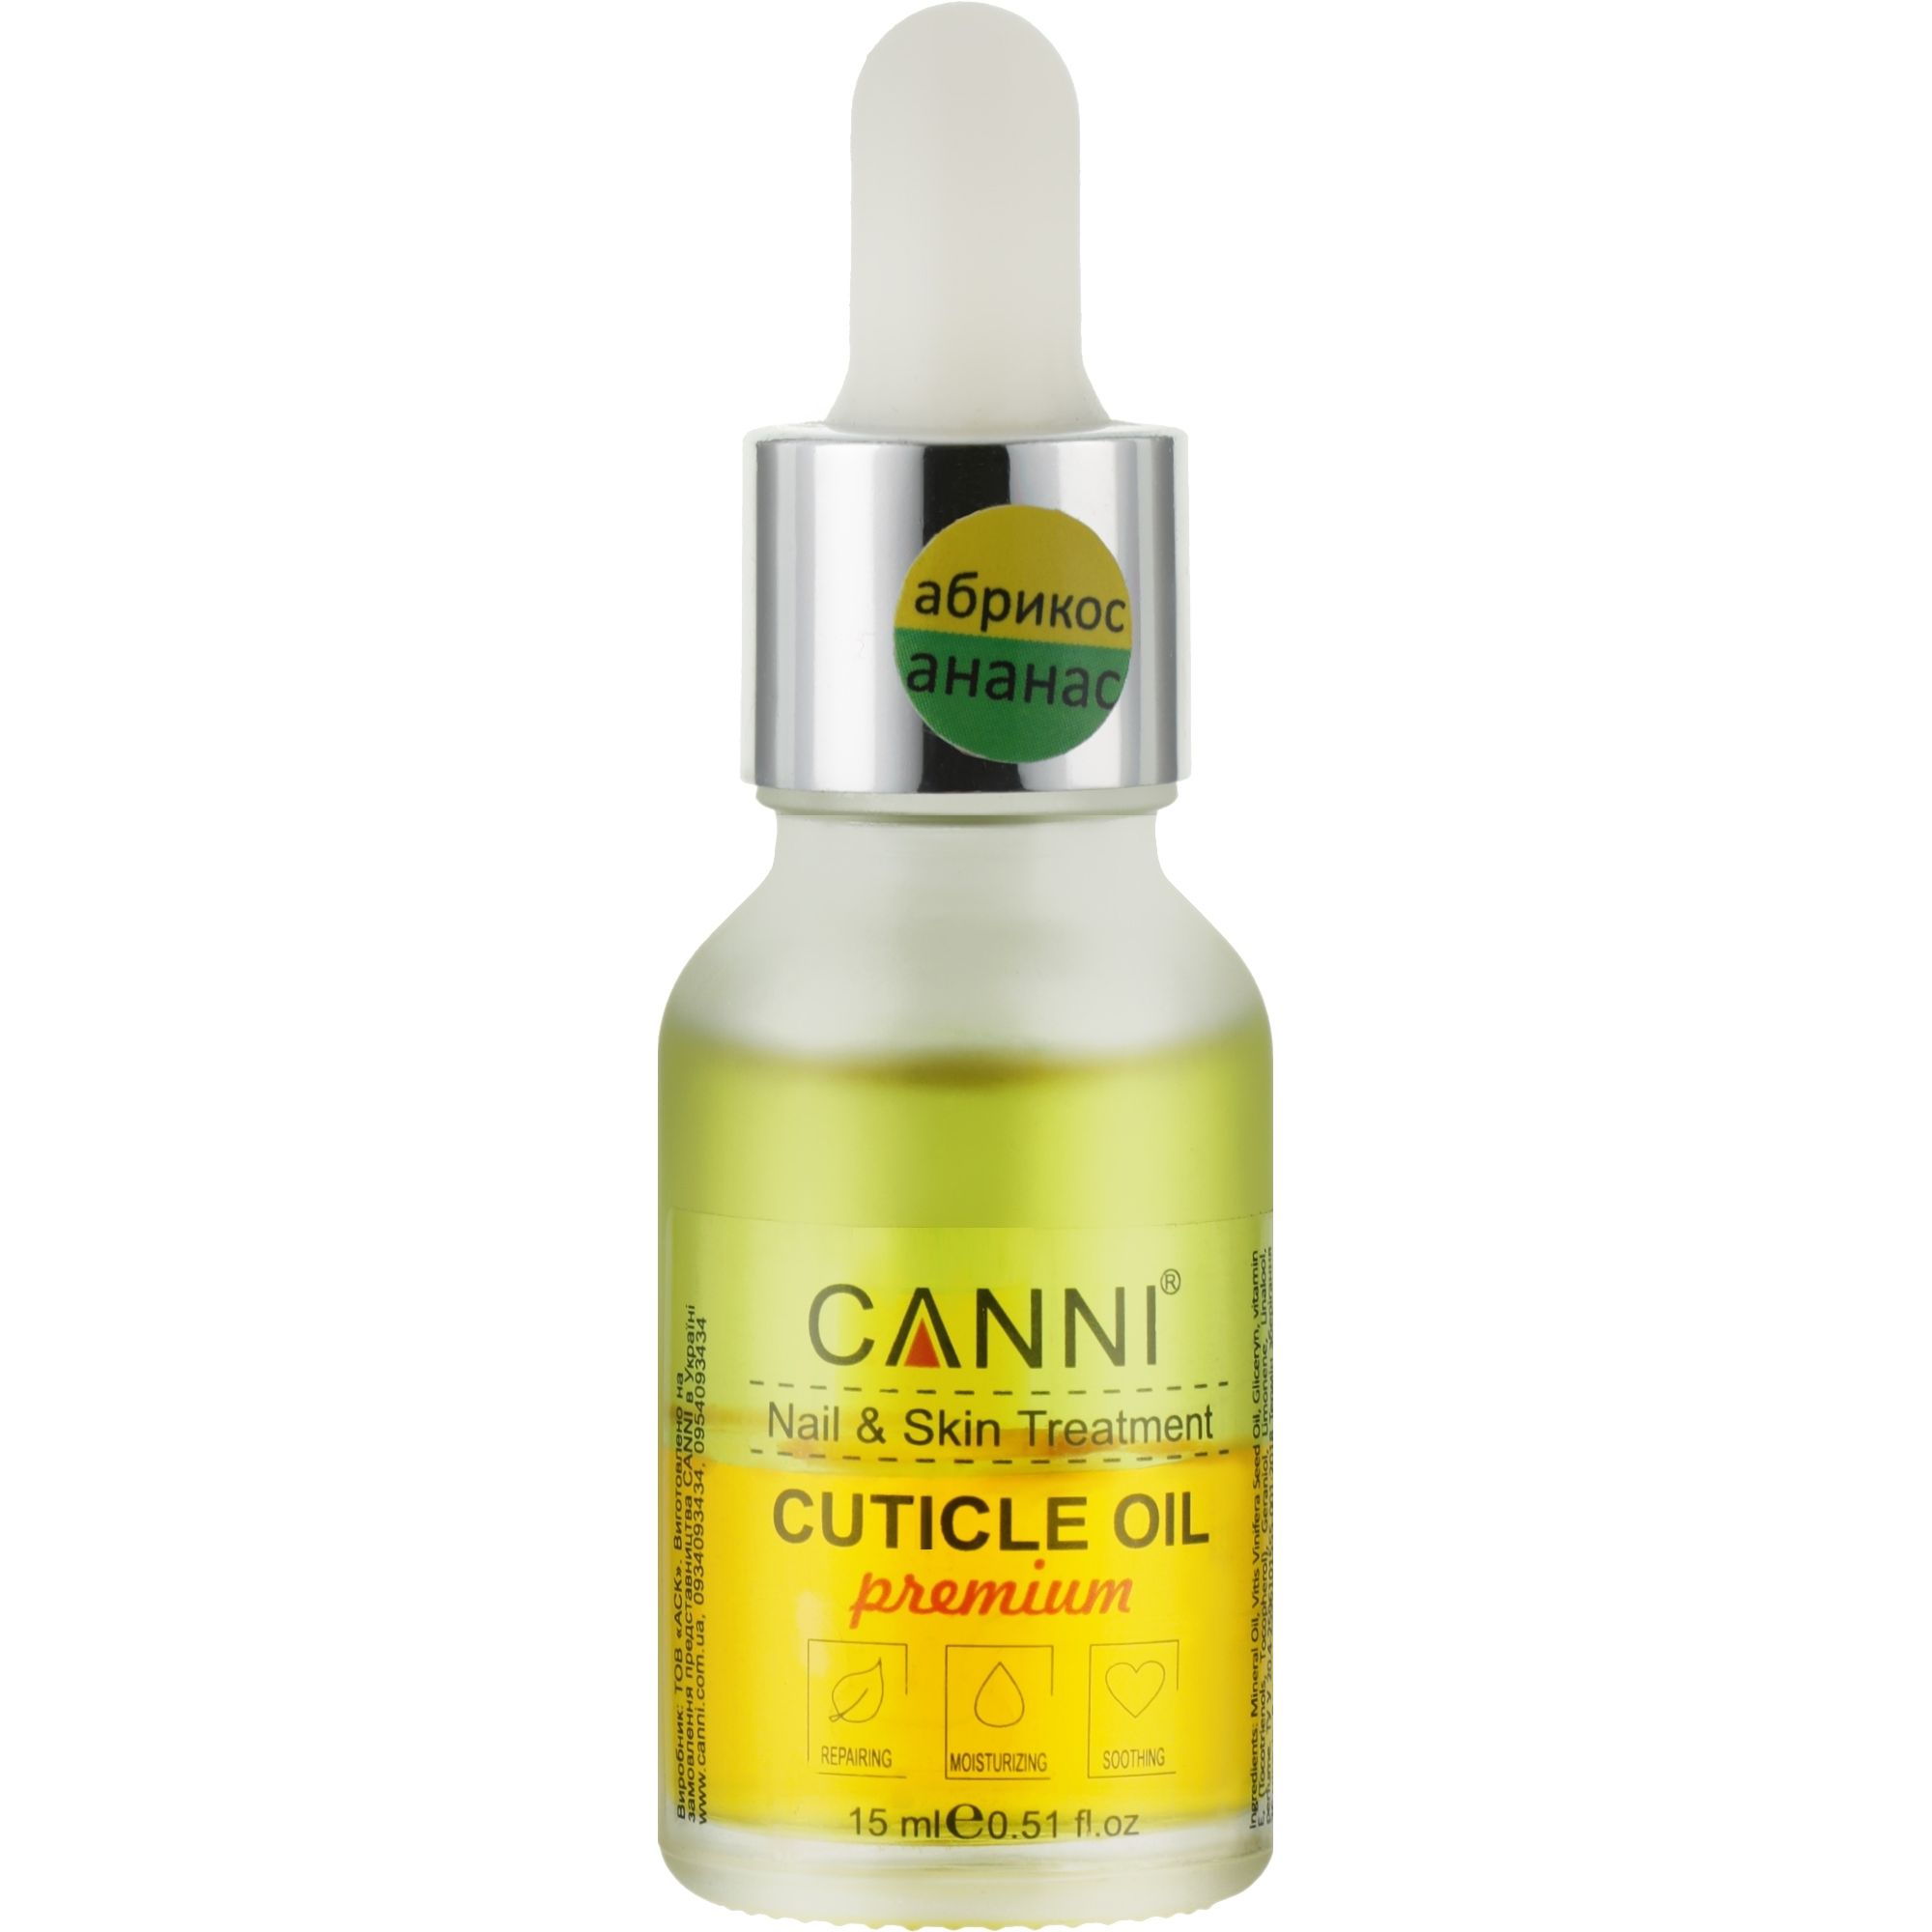 Олійка для кутикули Canni Premium Cuticle Oil двофазна Абрикос-Ананас 15 мл - фото 1